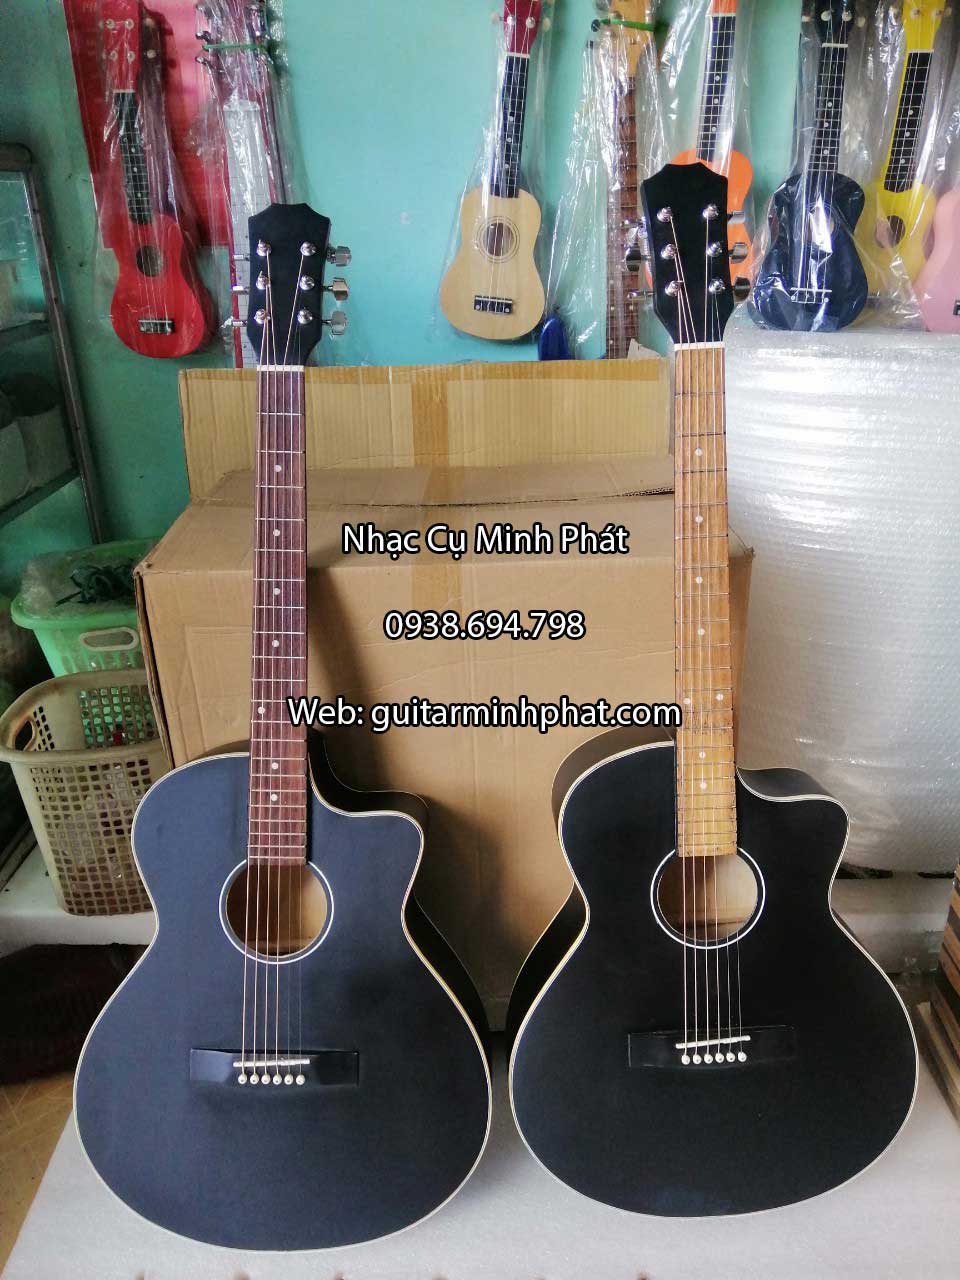 dan-guitar-acoustic-mau-den-co-ty-chong-cong-can-gia-re-sinh-vien (4).jpg